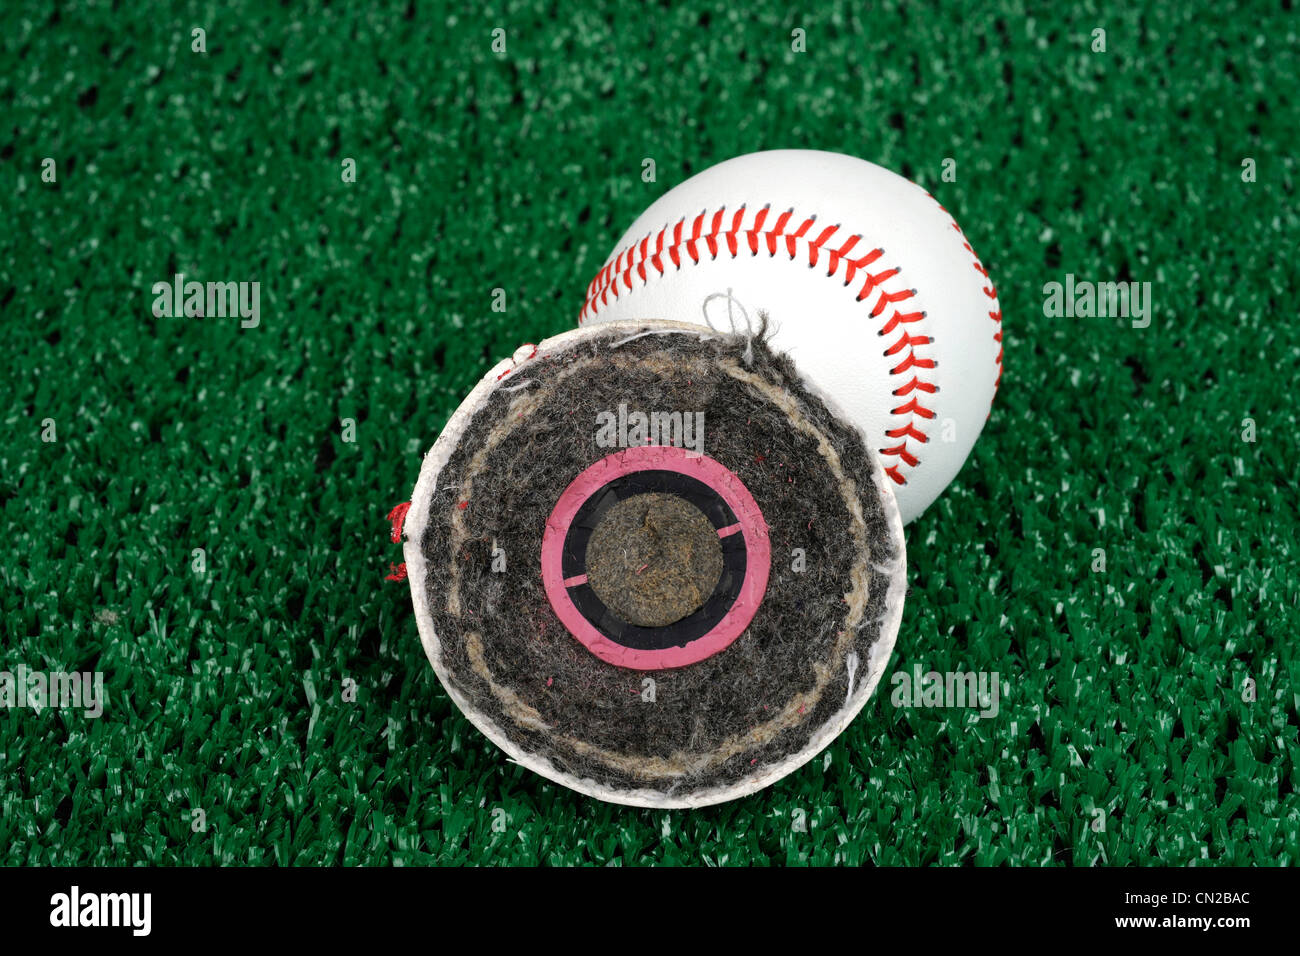 Querschnitt durch einen großen Rawlings Liga Baseball. Verfügt über ein Korken in zwei Kautschuk lagen, Lagen Garn, Lederhülle ummantelt Stockfoto